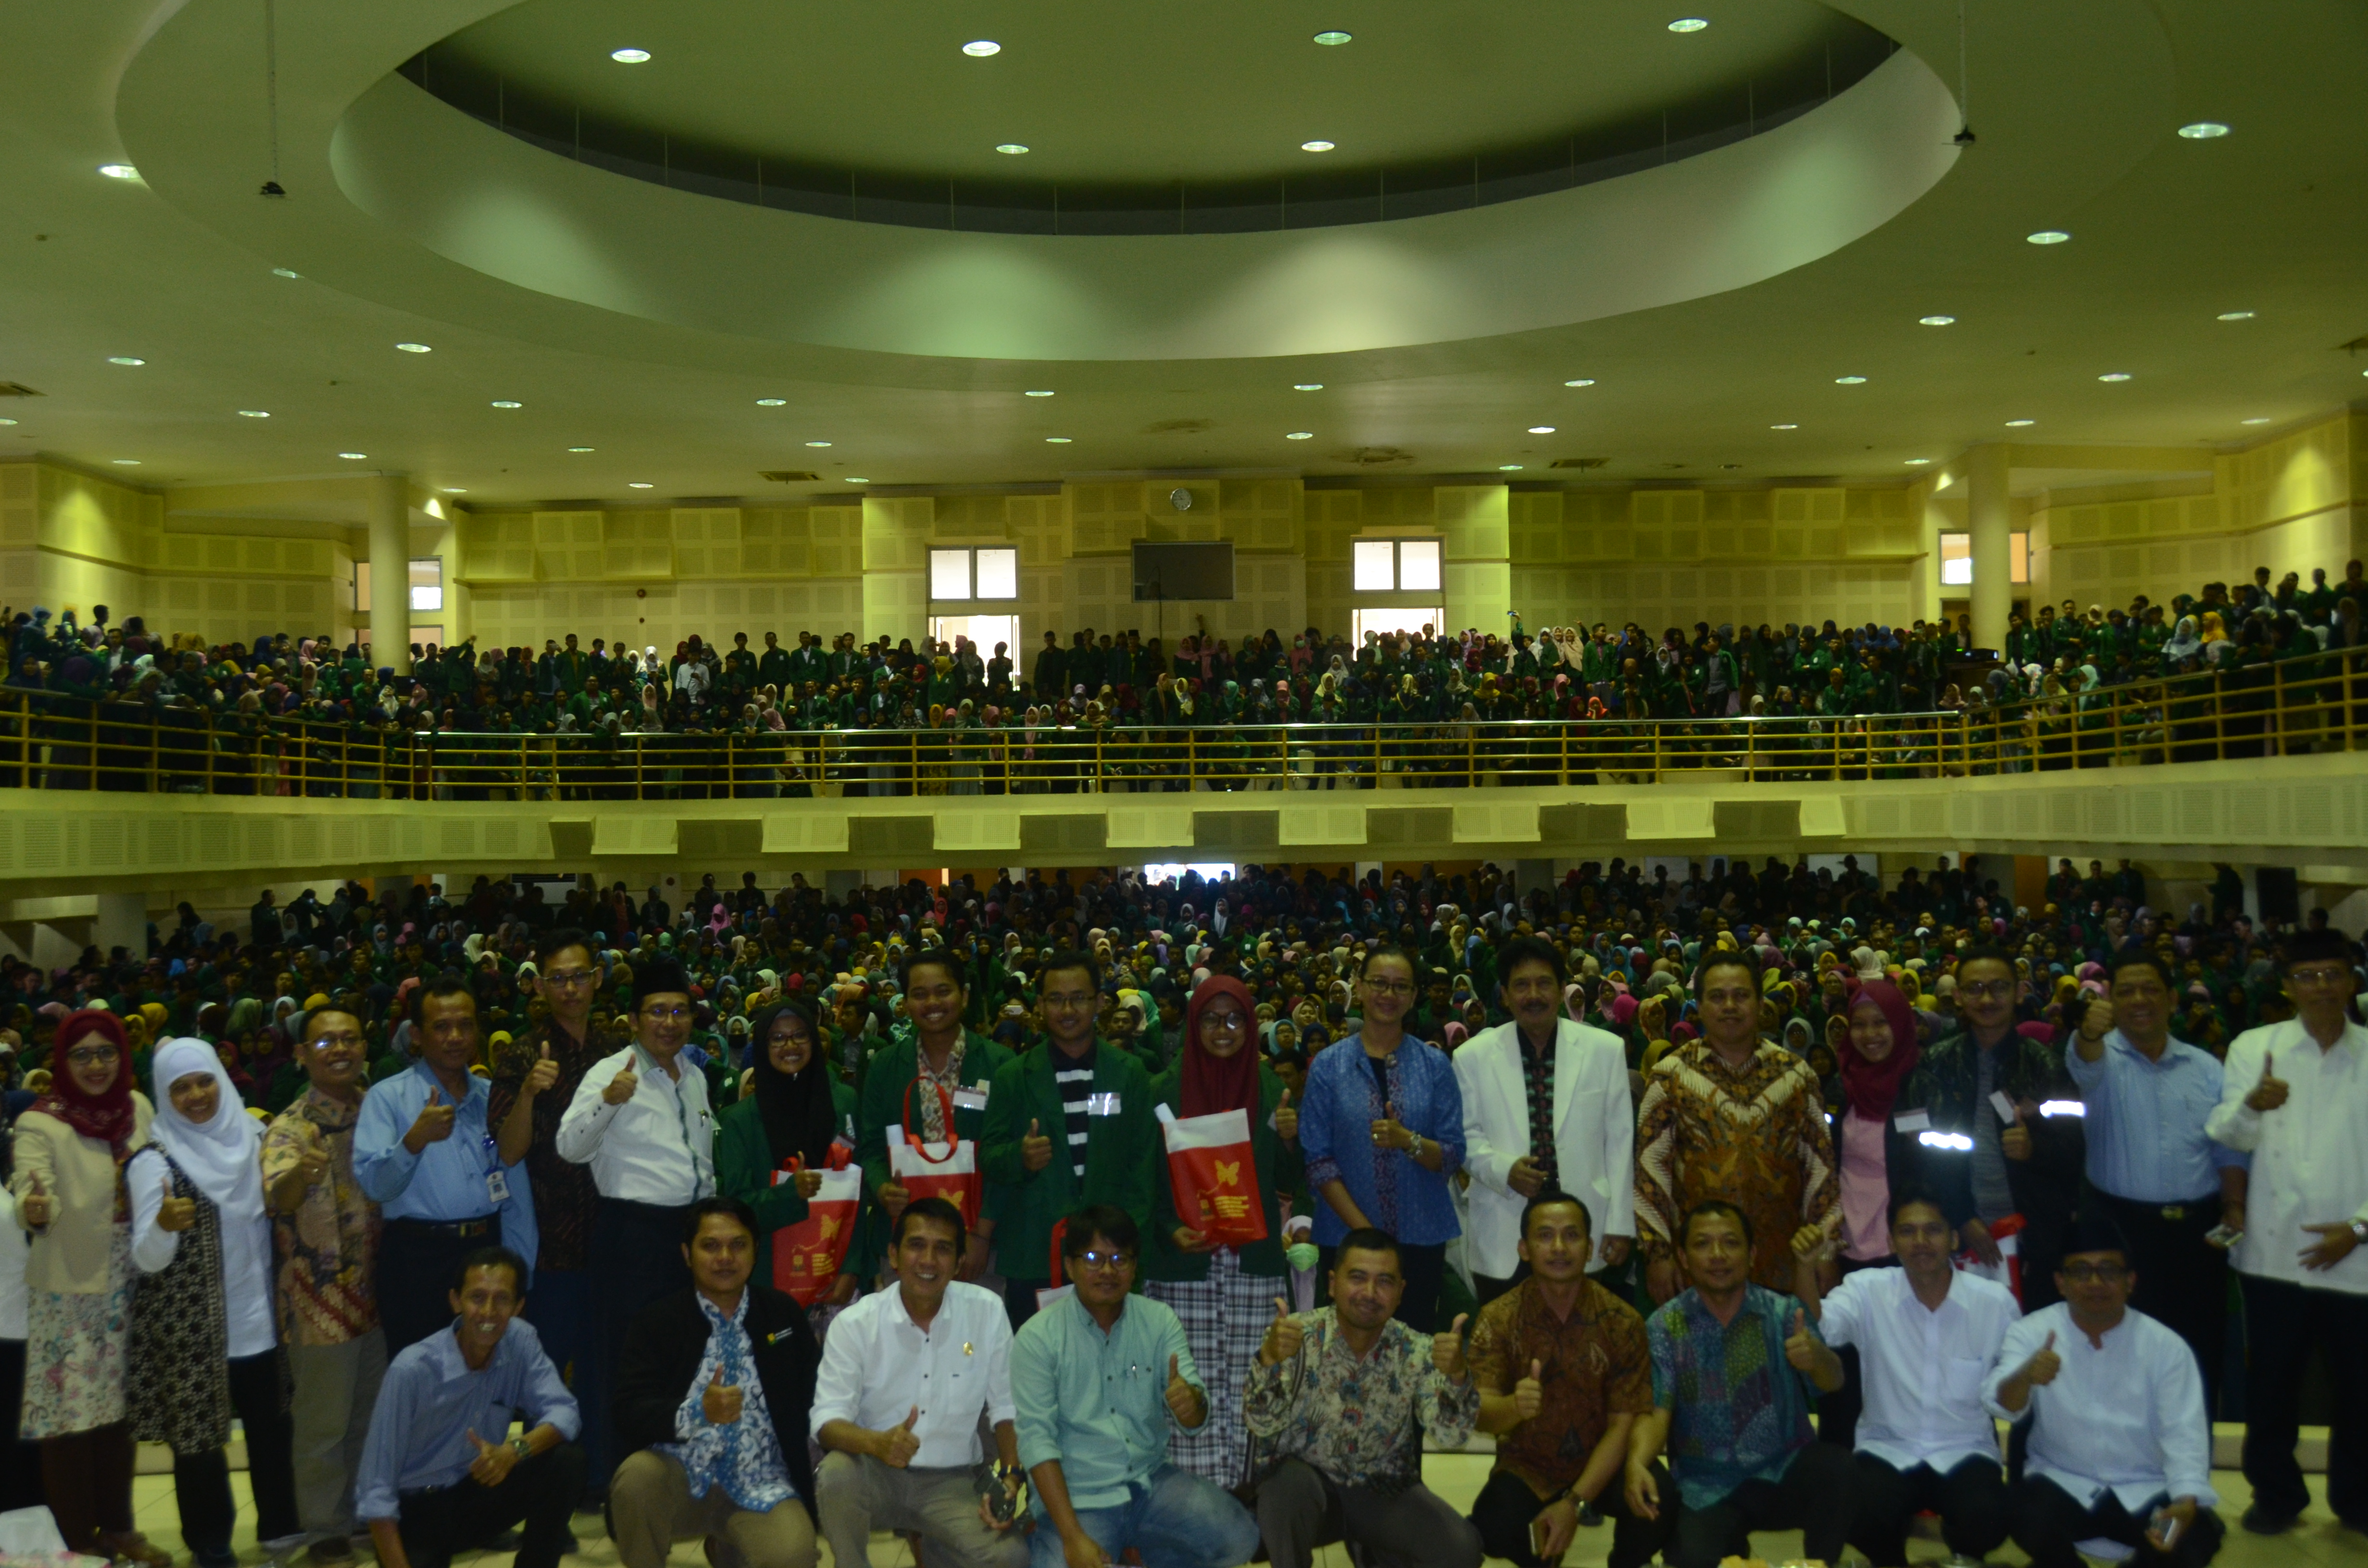 Bidang Puslitbang Agama dan Keagamaan Kementerian Agama RI bersama enam konsorium perguruan tinggi negeri islam salah satunya UIN Sunan Kalijaga Yogyakarta